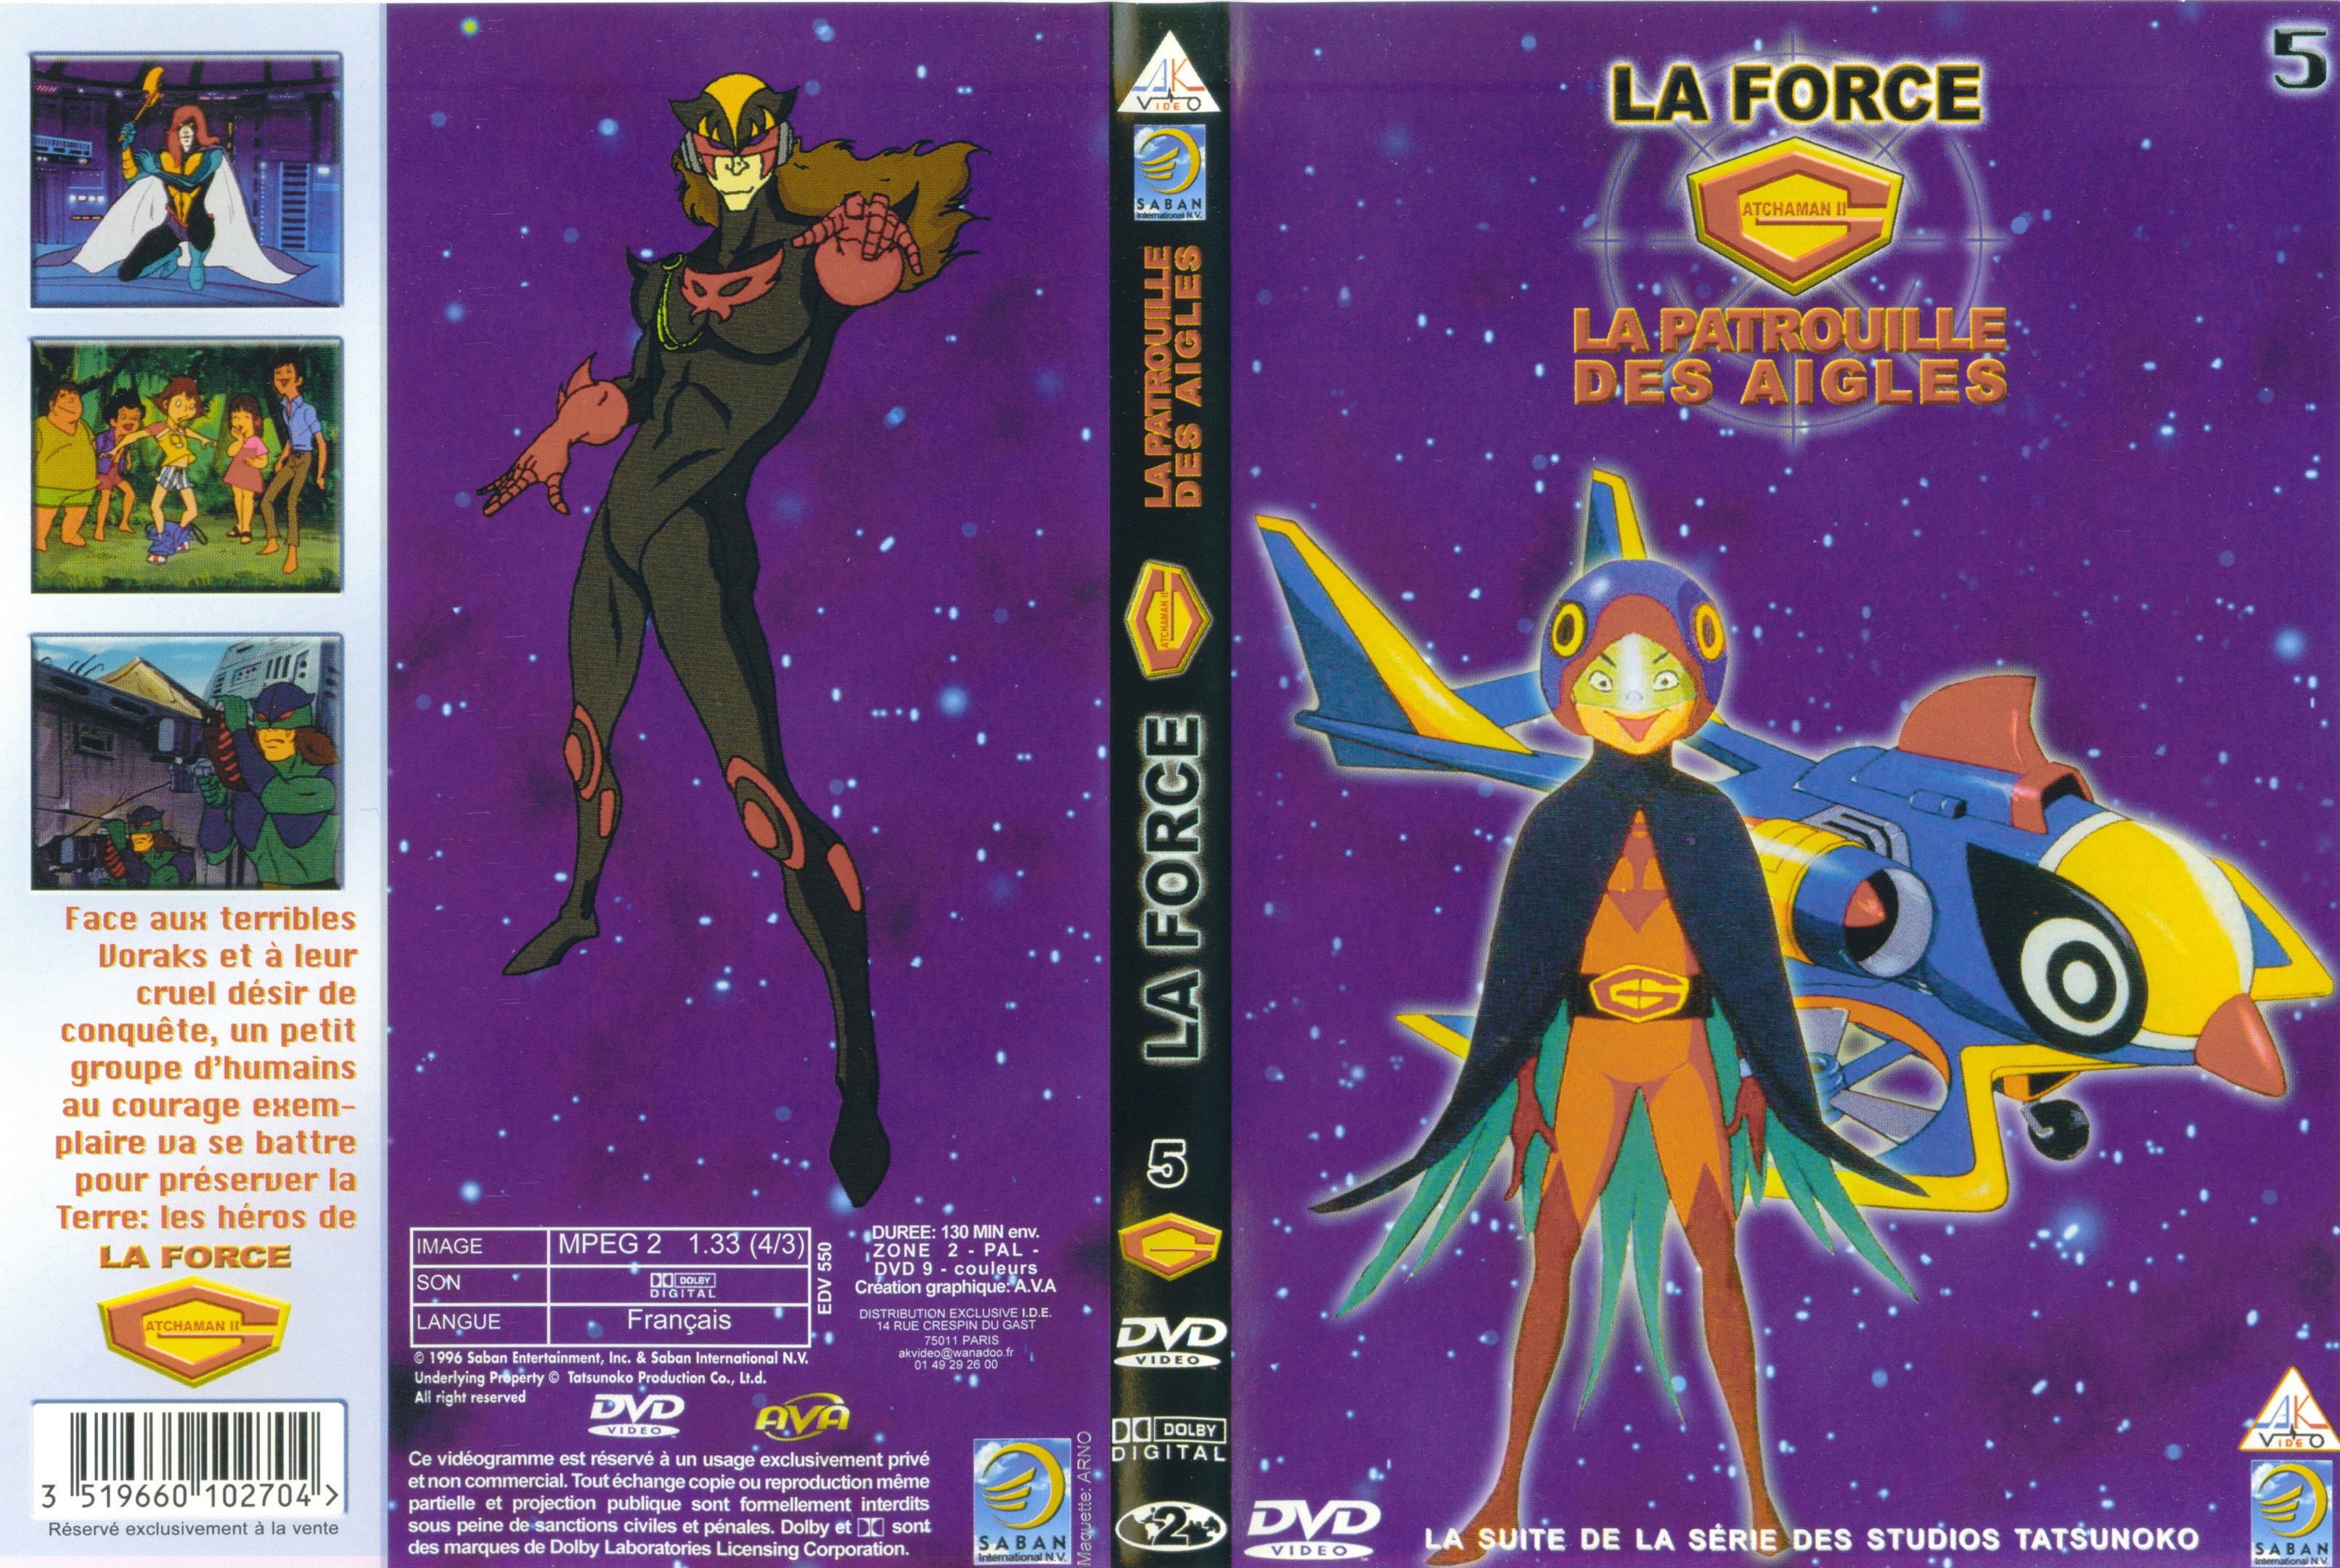 Jaquette DVD La force G vol 05